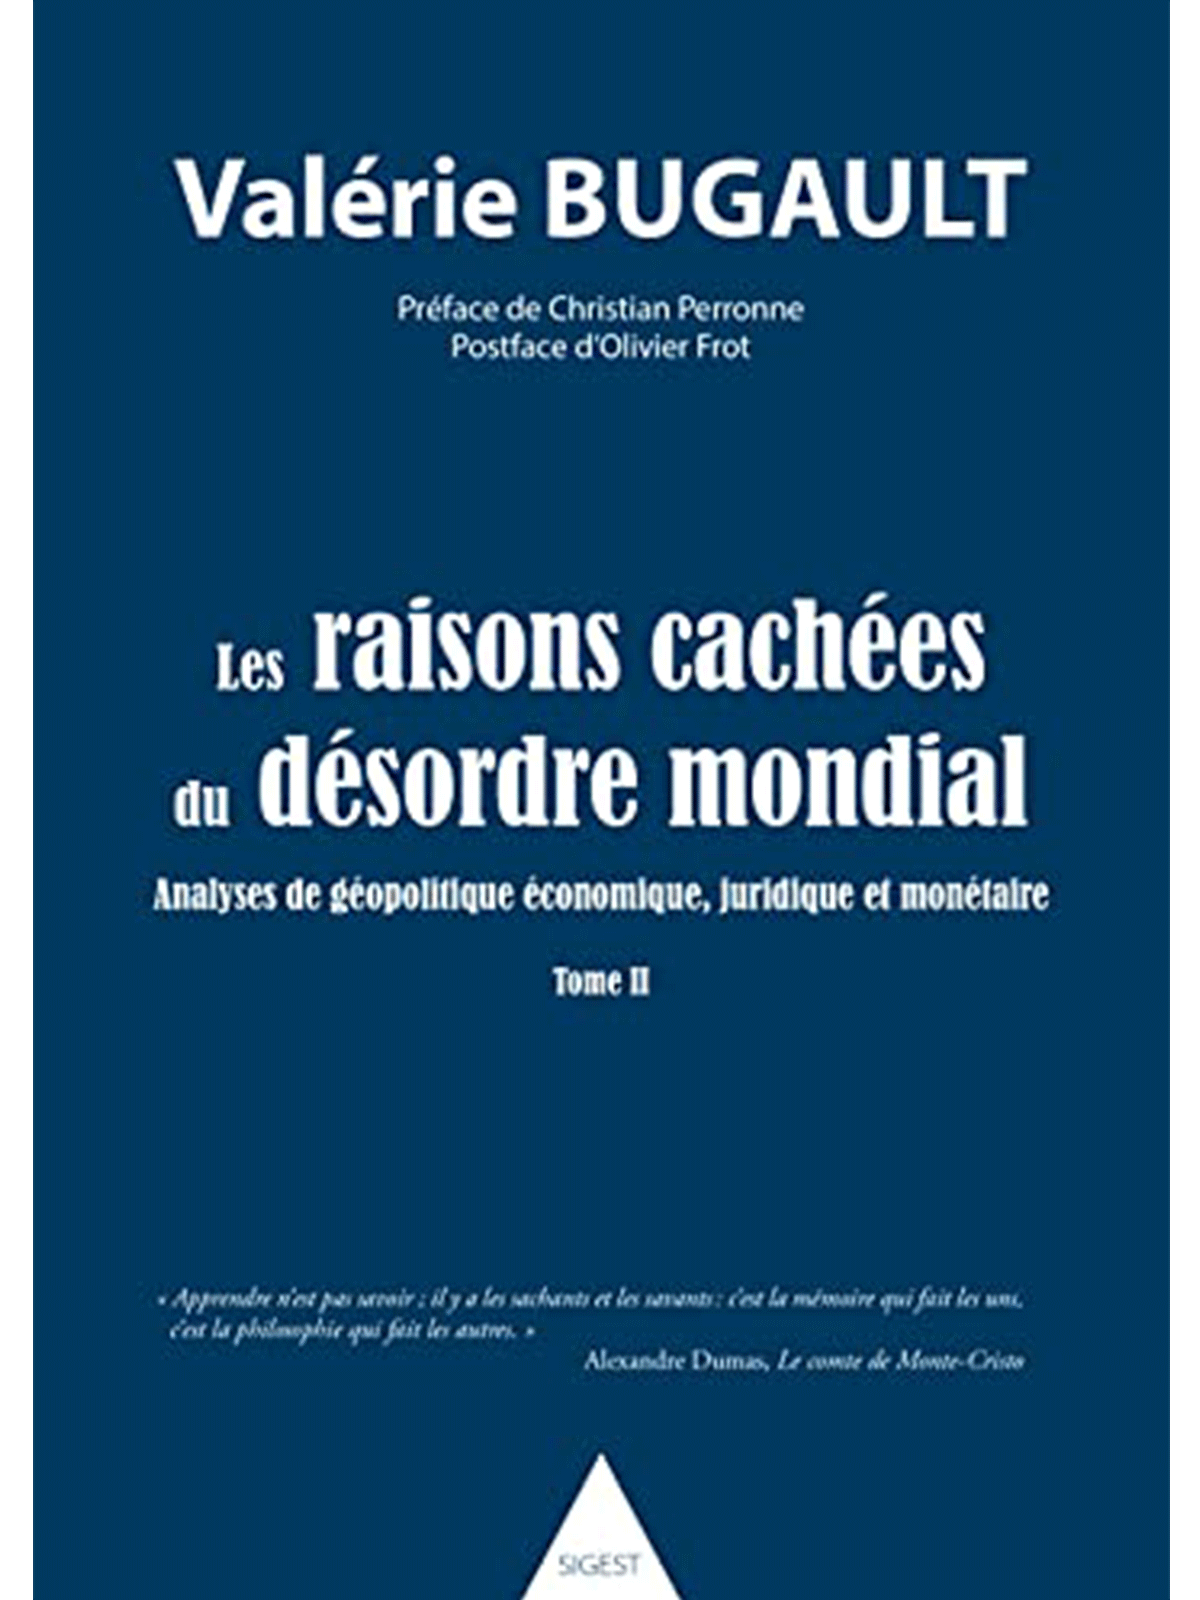 Valérie Bugault : Les raisons cachées du désordre mondial - tome II